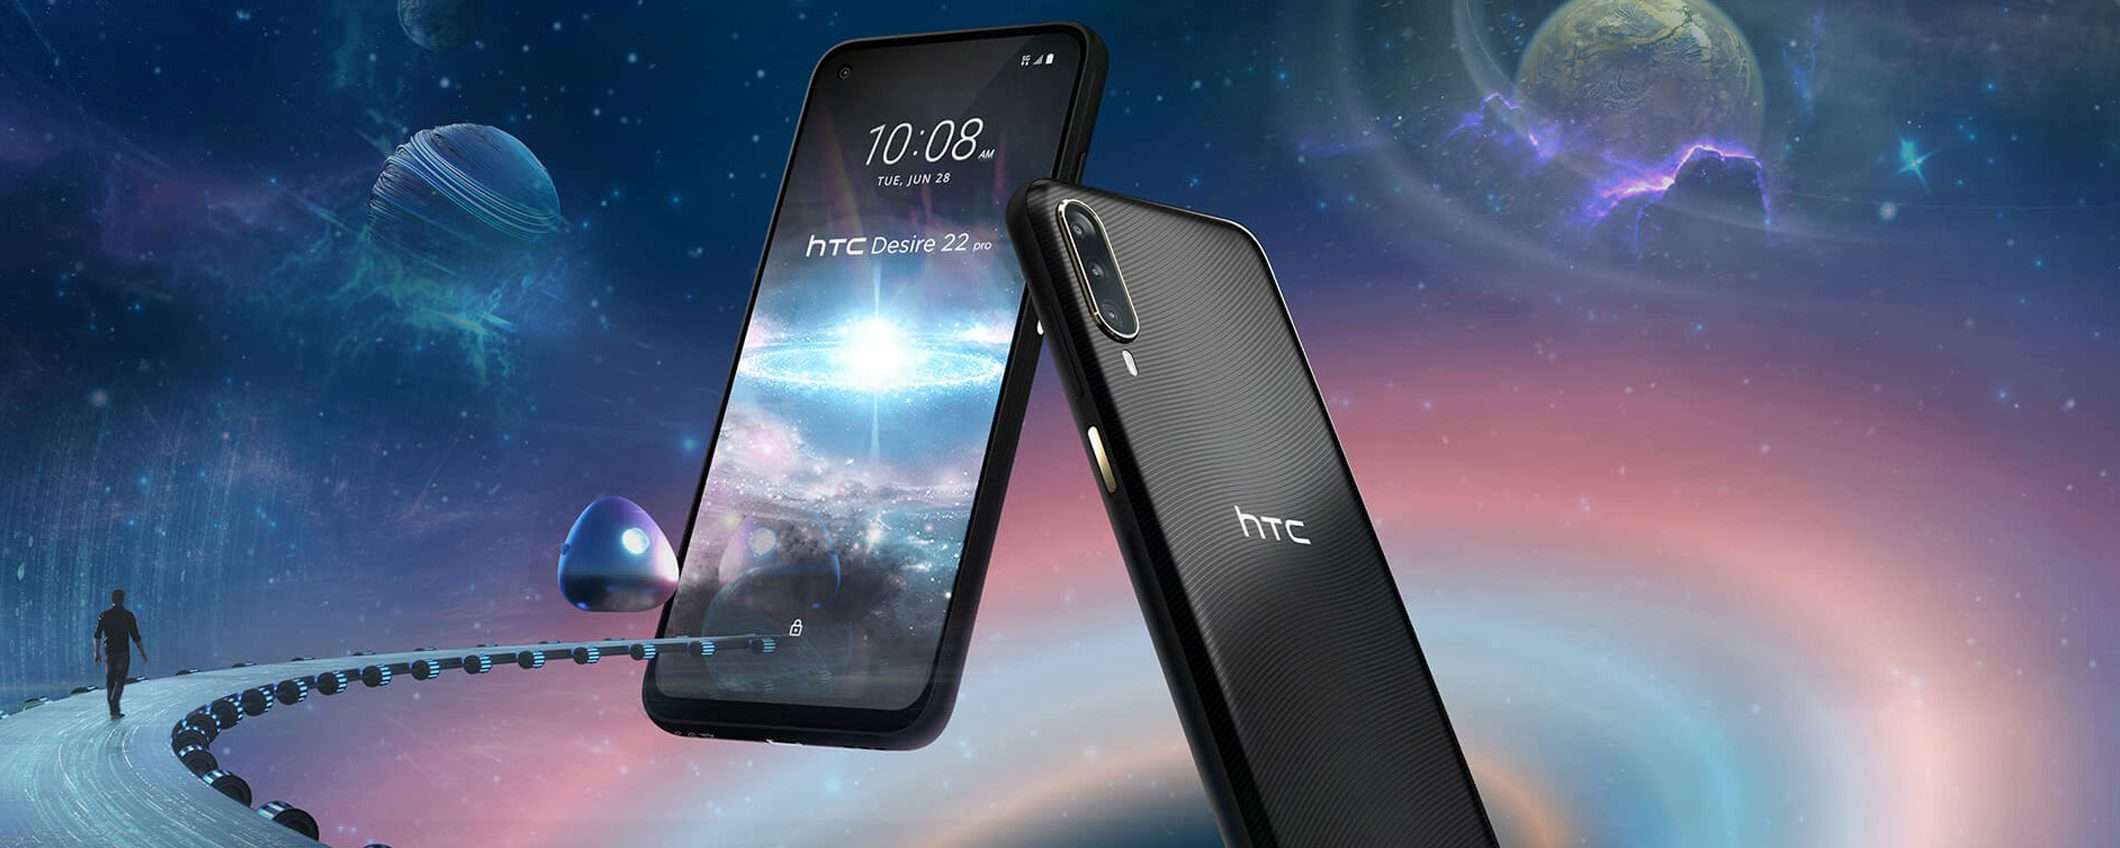 HTC Desire 22 pro: uno smartphone per il metaverso